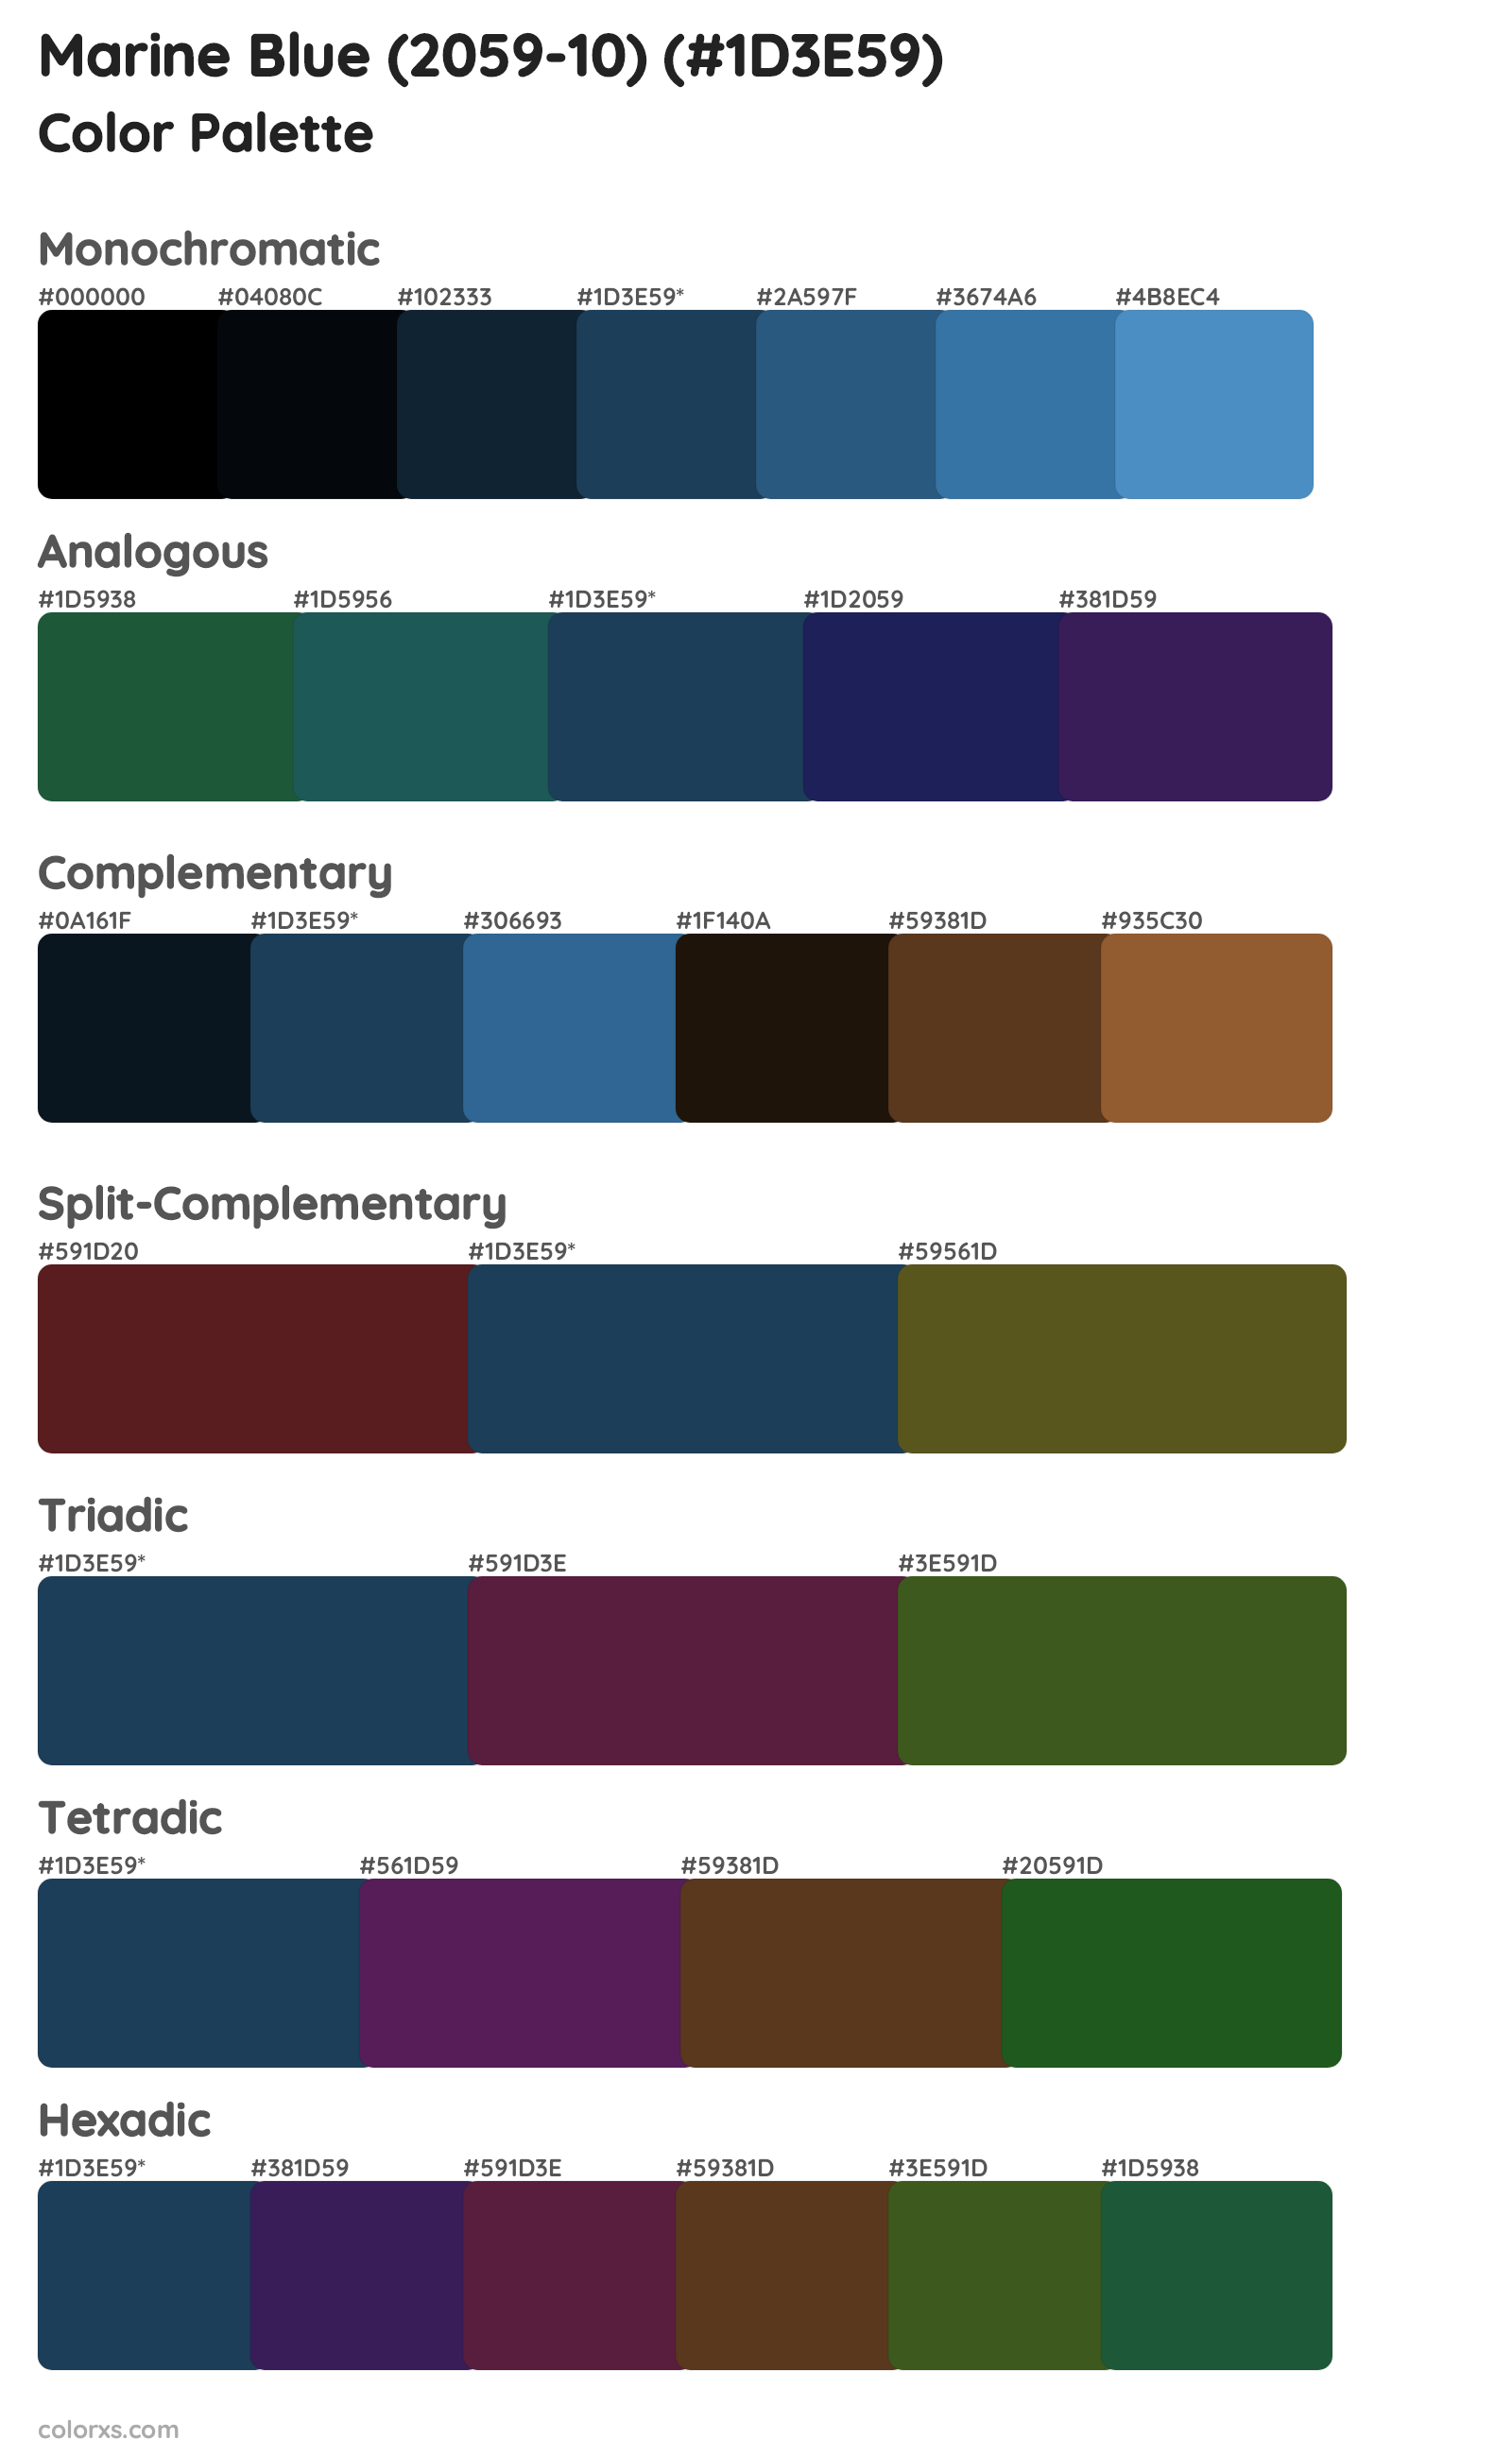 Marine Blue (2059-10) Color Scheme Palettes